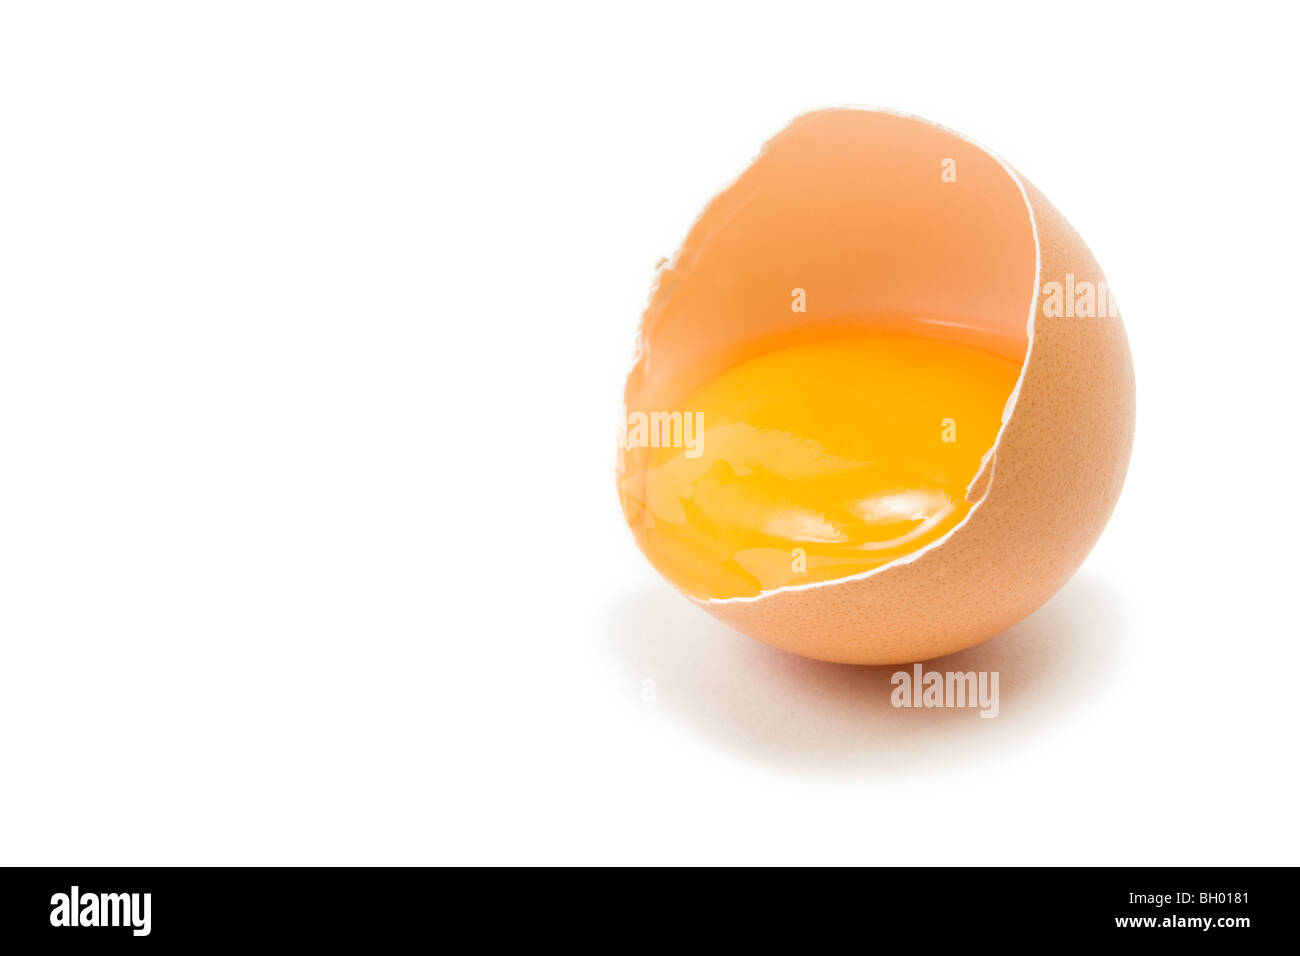 Unico crepe aperte di uova di galline che mostra il tuorlo isolata contro uno sfondo bianco Foto Stock